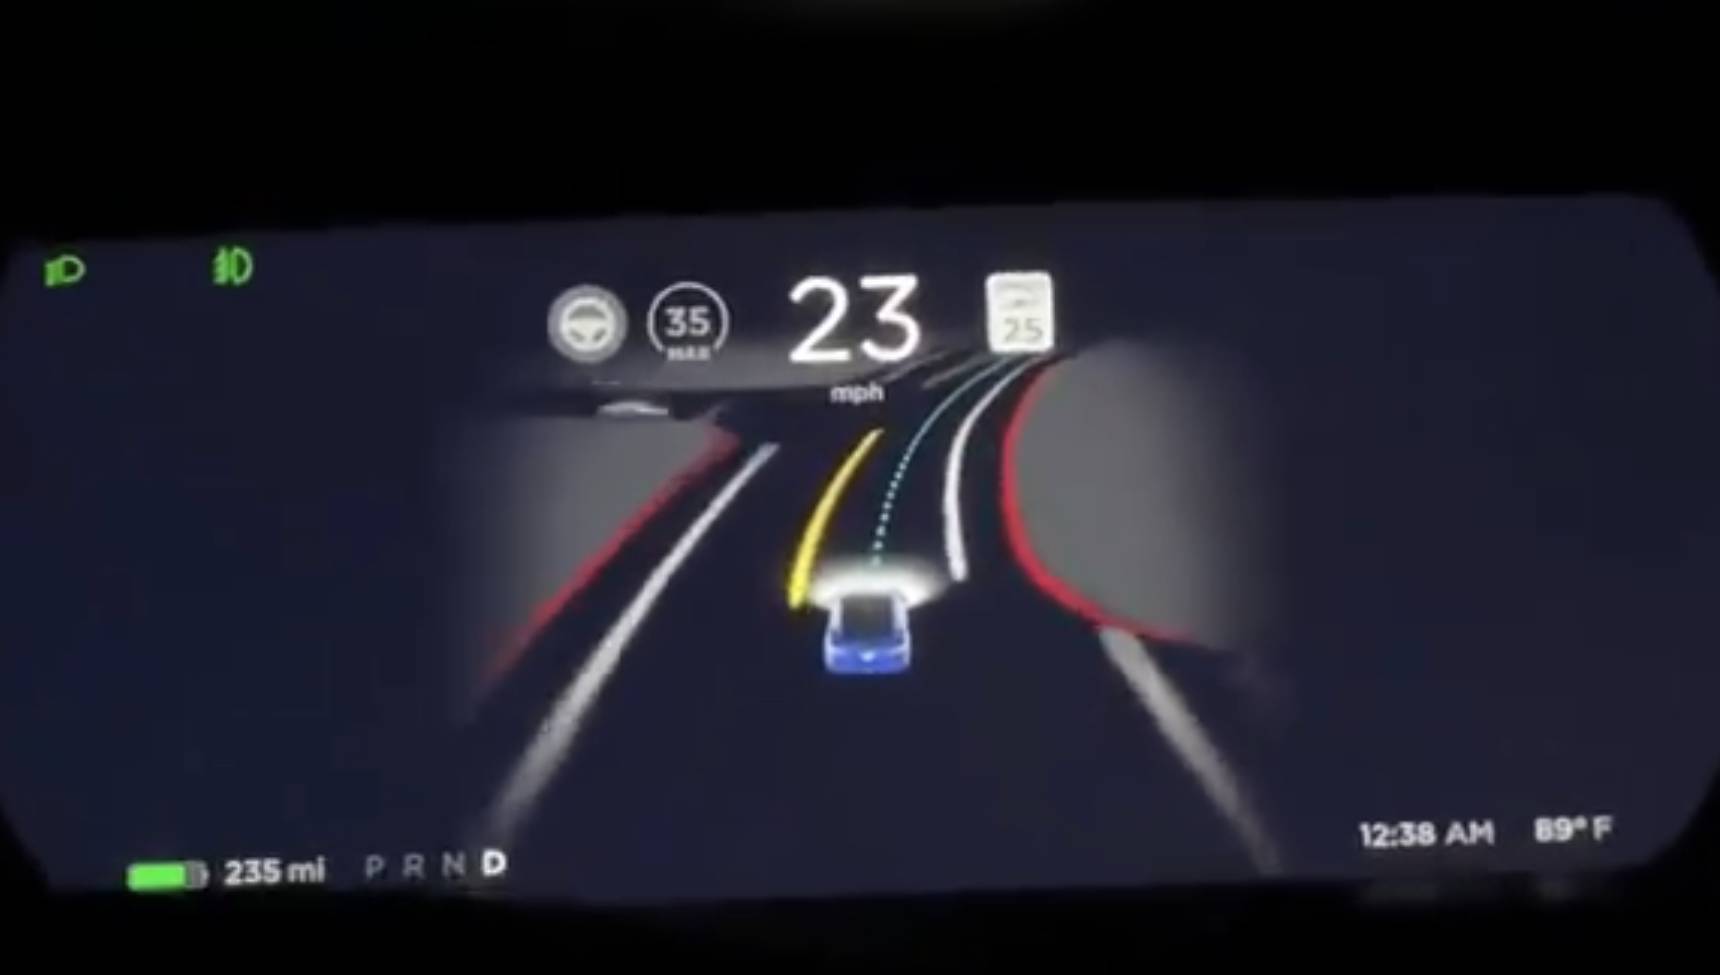 Dong Che Daily Tesla veröffentlicht das vollautomatisierte Fahrsystem Beta 9.0 / Audis Projekt für autonomes Fahren wird 2025 in Serie gehen / Xiaomi beschleunigt den Prozess der Autoherstellung - tesla